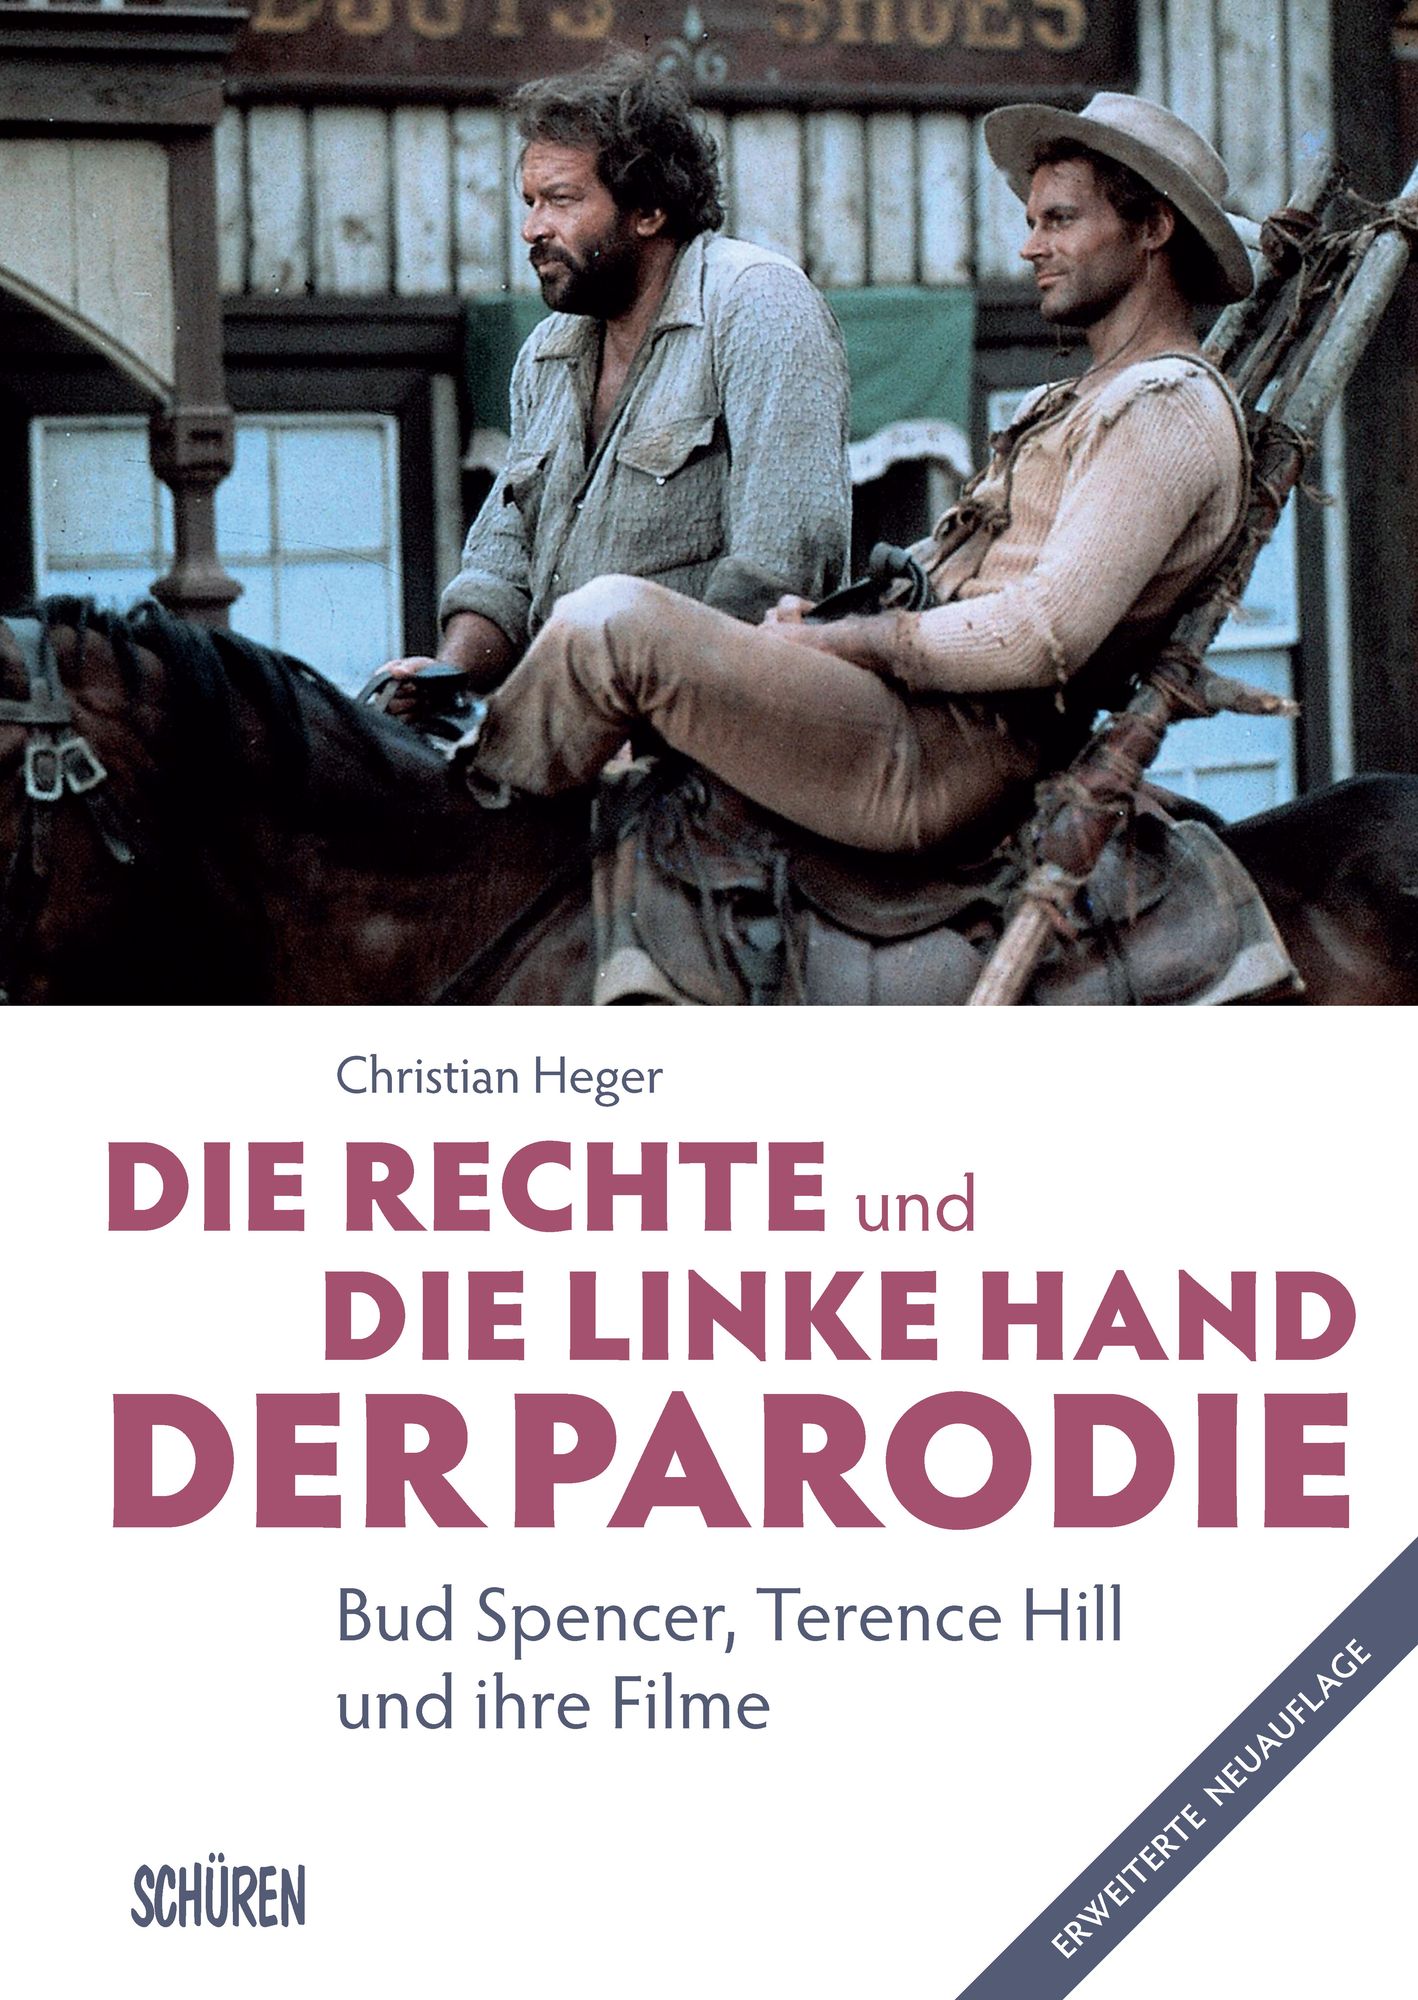 Die rechte und die linke Hand der Parodie - Bud Spencer, Terence Hill und  ihre Filme' von 'Christian Heger' - Buch - '978-3-7410-0333-2